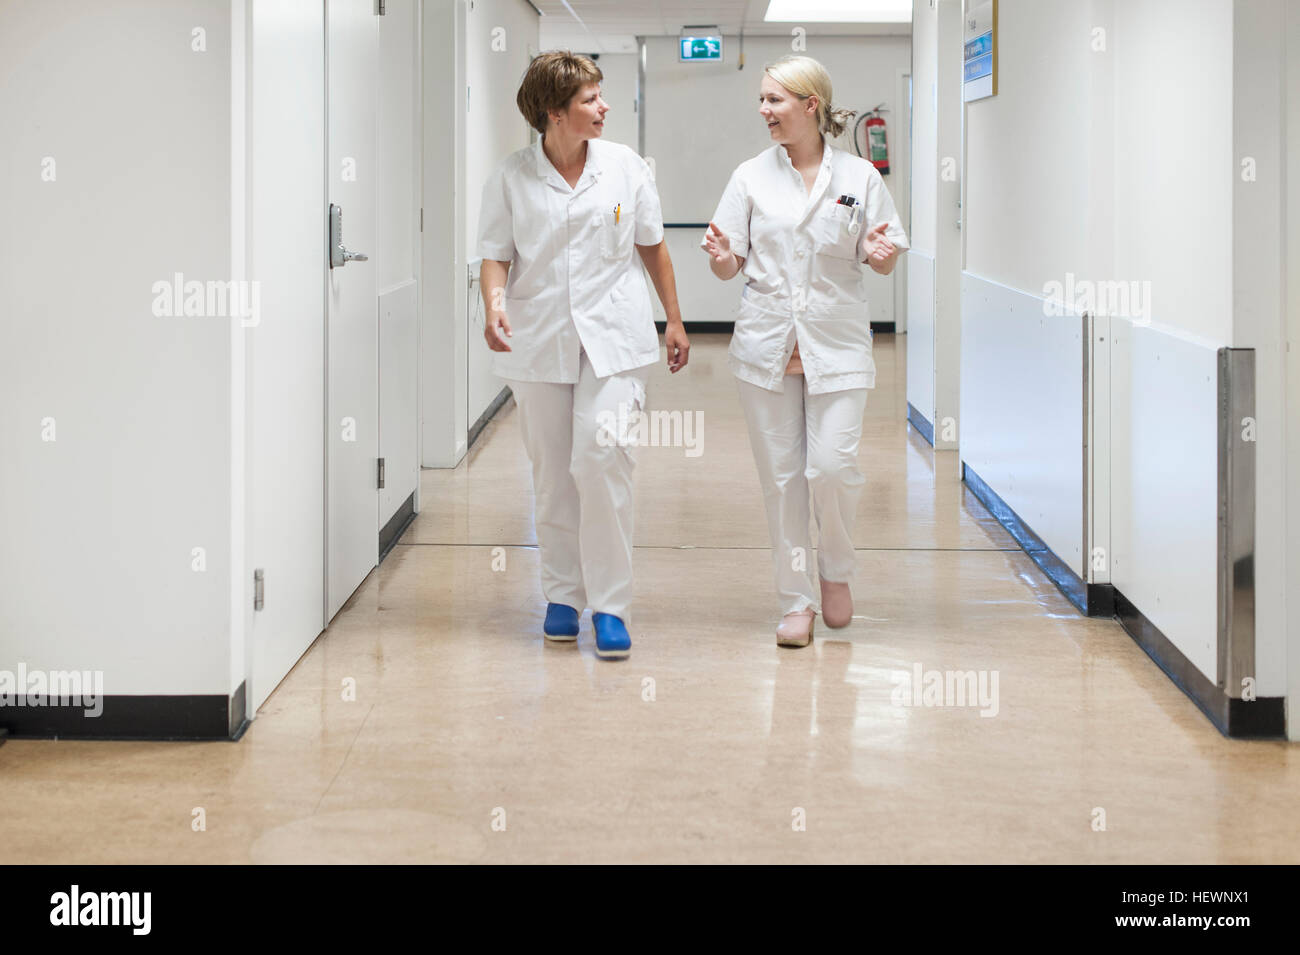 Las enfermeras en el hospital corredor caminando Foto de stock